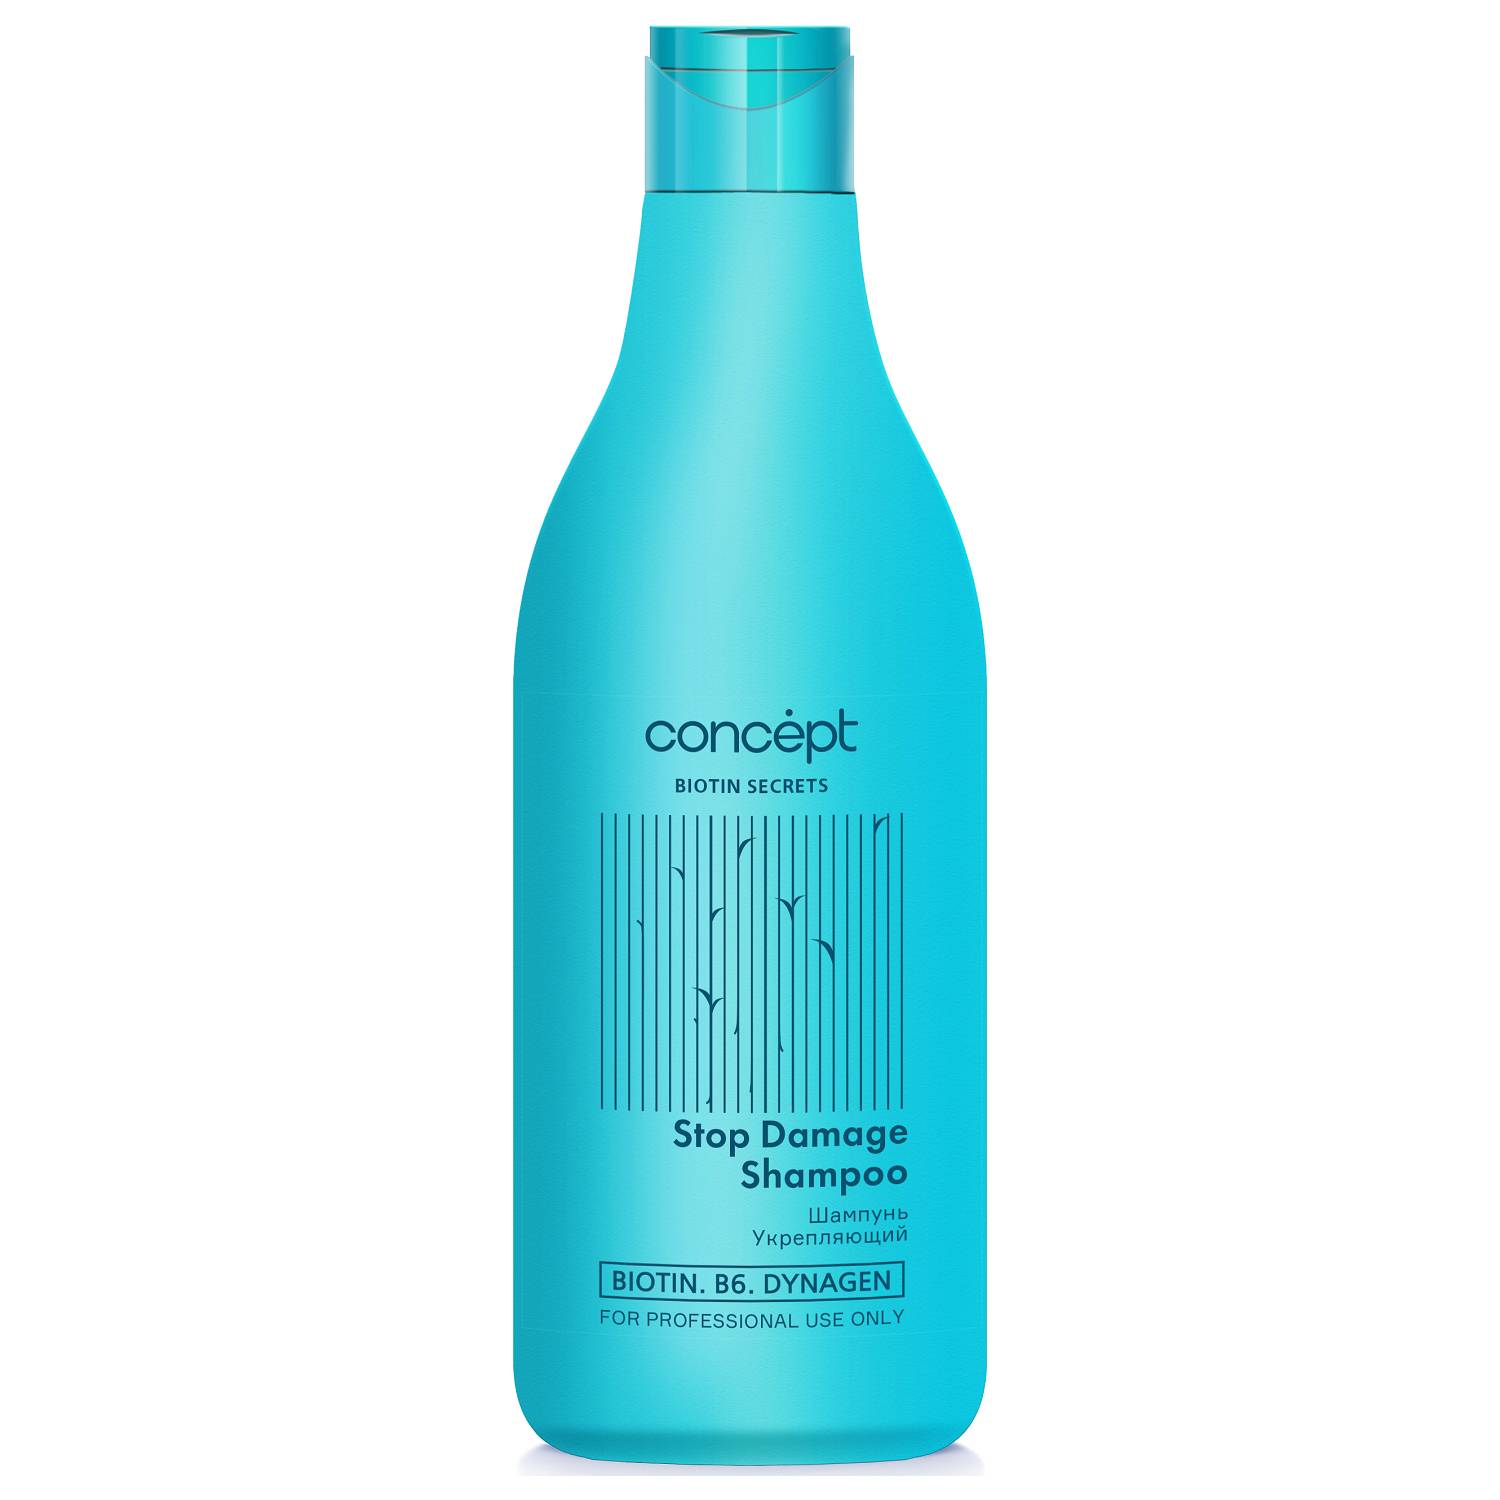 цена Concept Укрепляющий шампунь Stop Damage Shampoo, 500 мл (Concept, Biotin Secrets)